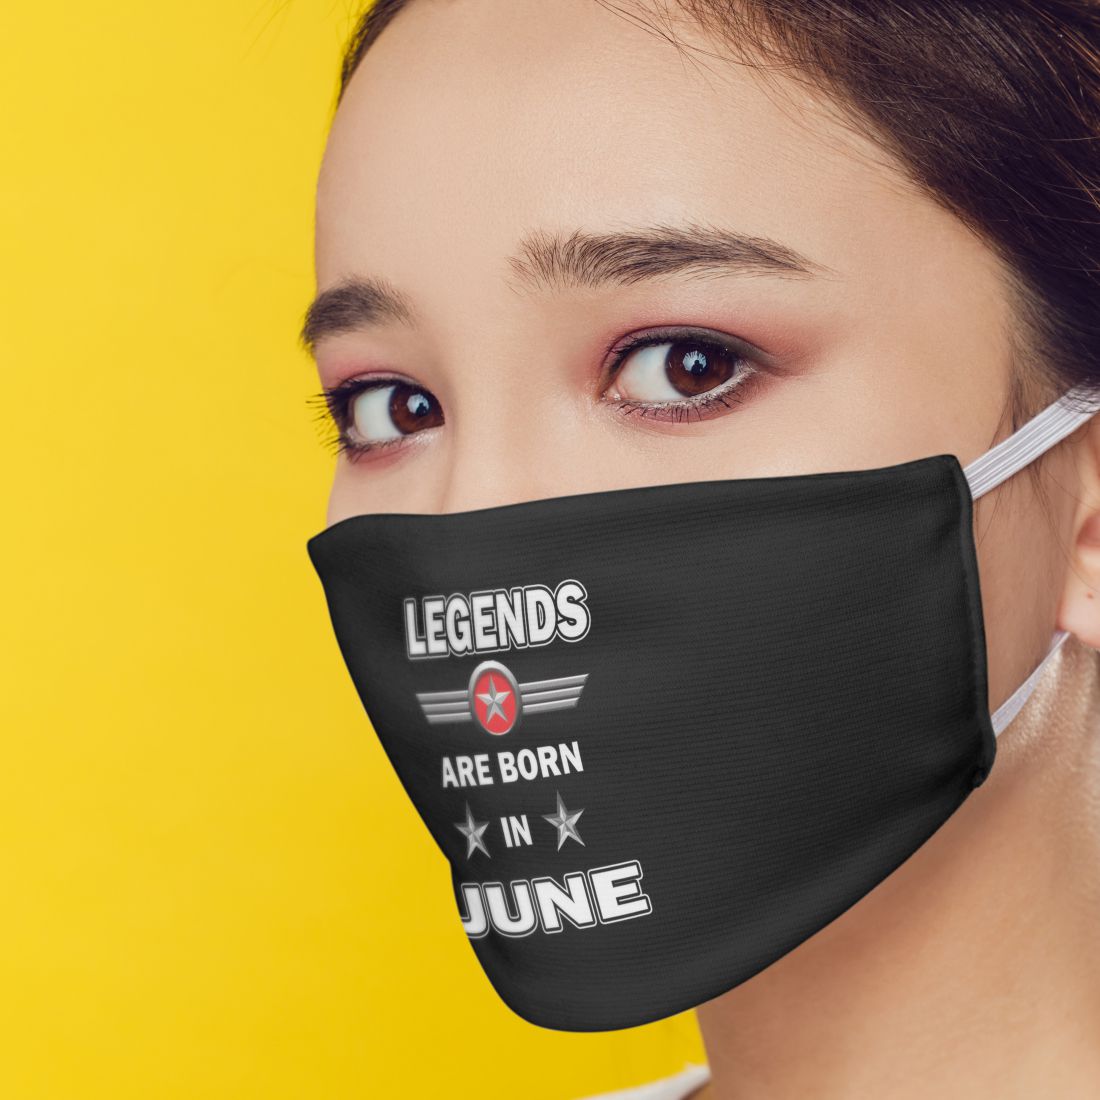 Legends June Mask-Image3